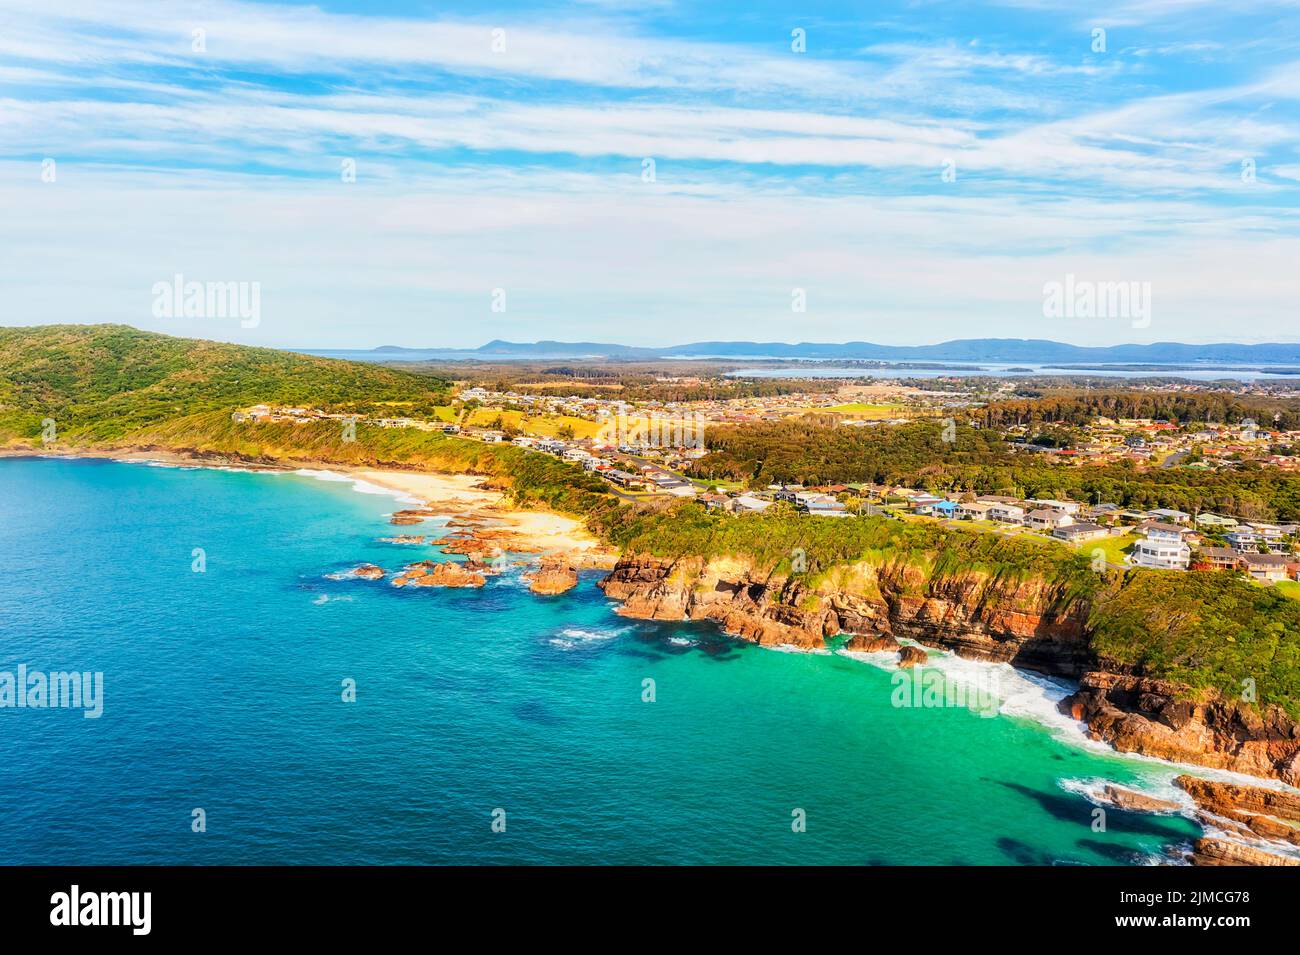 Rochers et falaises sur la côte Pacifique autour de la plage de burgess dans la ville de Forster en australie - vue aérienne sur le paysage depuis la mer ouverte. Banque D'Images